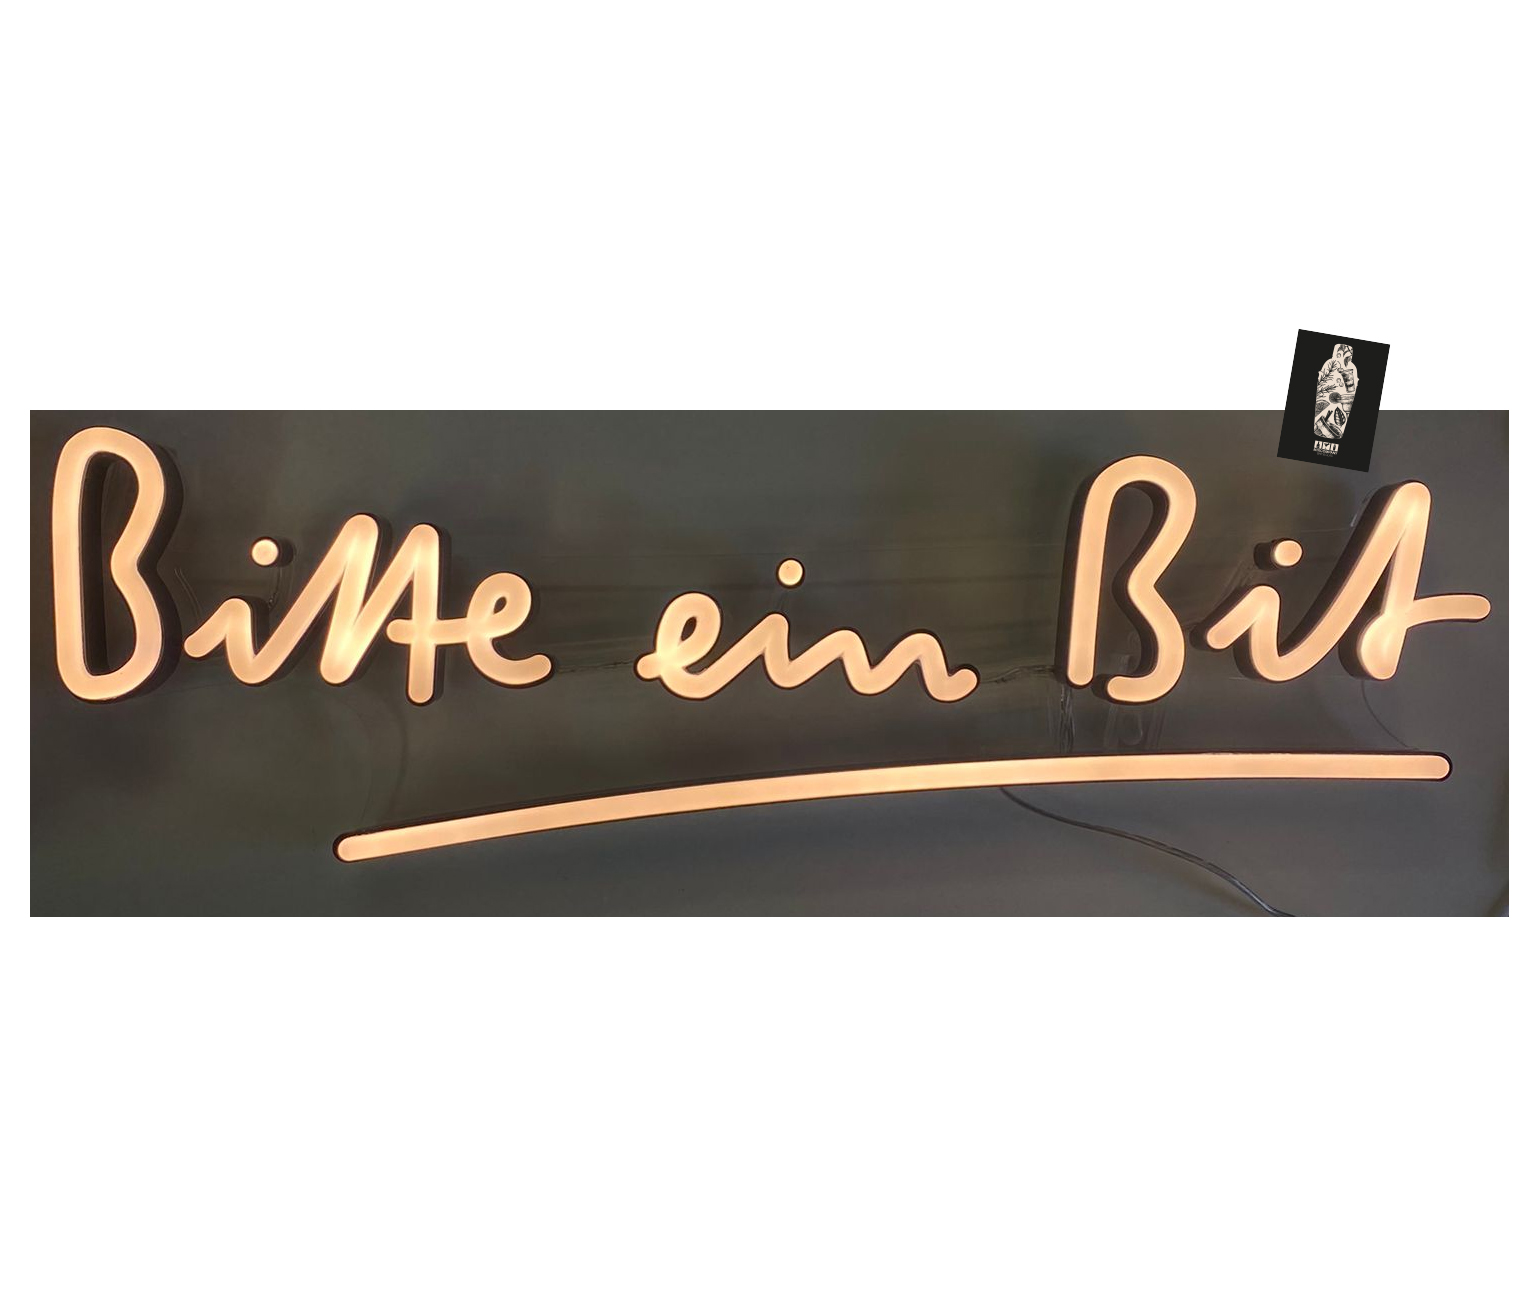 Bitburger "Bitte ein Bit" Leuchtschild Werbeschild Werbetafel Leuchtreklame LED Beleuchtet mit Netzteil + Wandbefestigung + Schraubenzieher + Schrauben - MAßE ca.55x13cm inkl. Mixcompany Postkarte